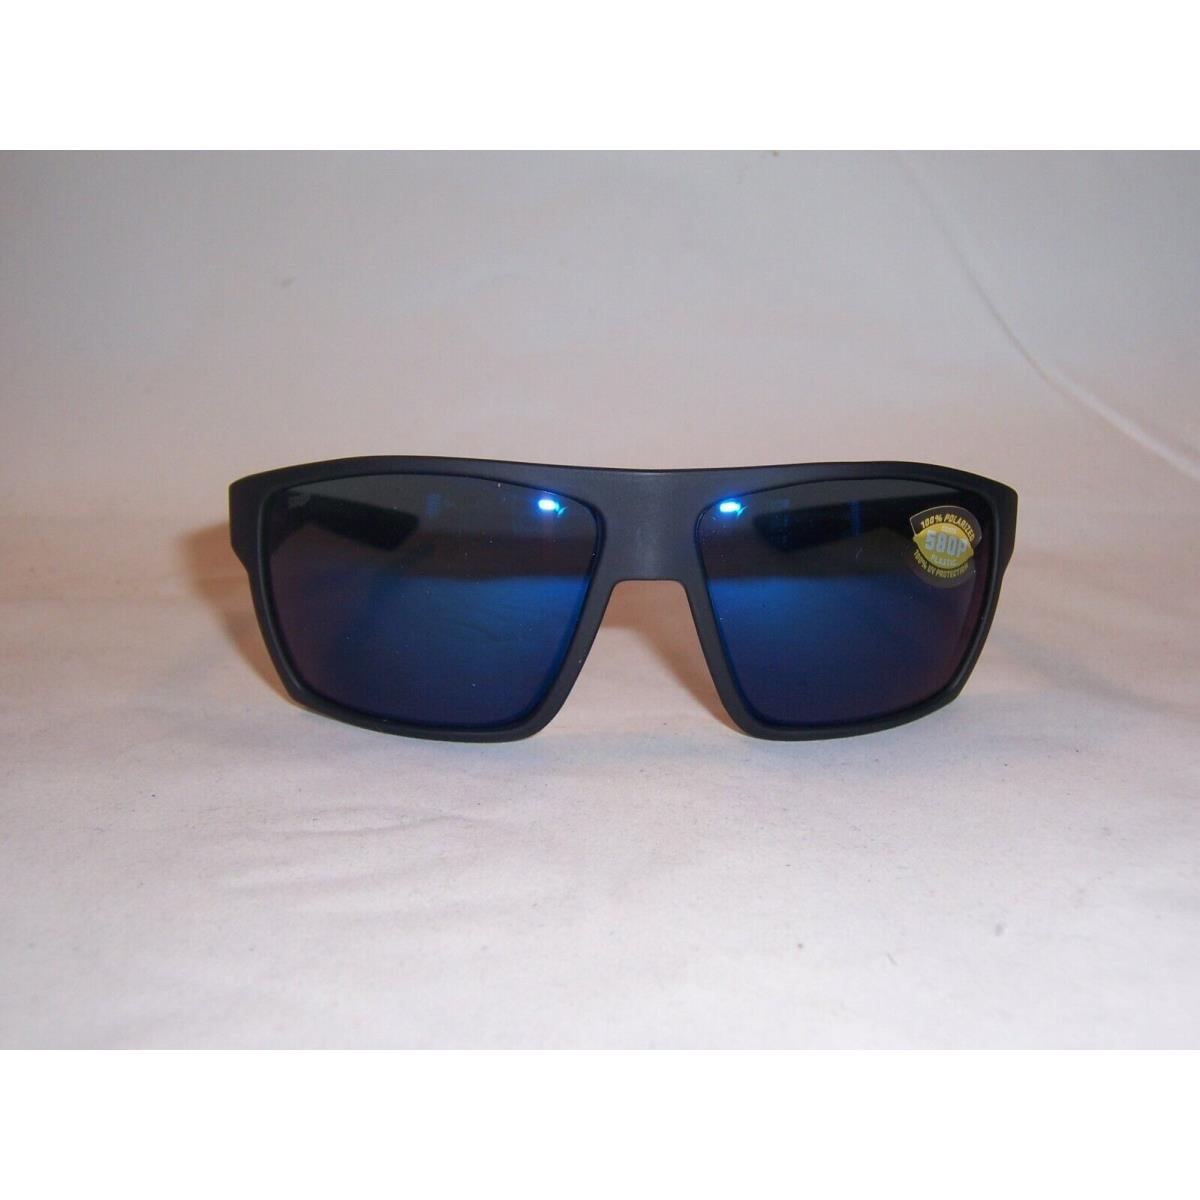 Costa Del Mar sunglasses Bloke - Black Gray Frame, Blue Lens 2